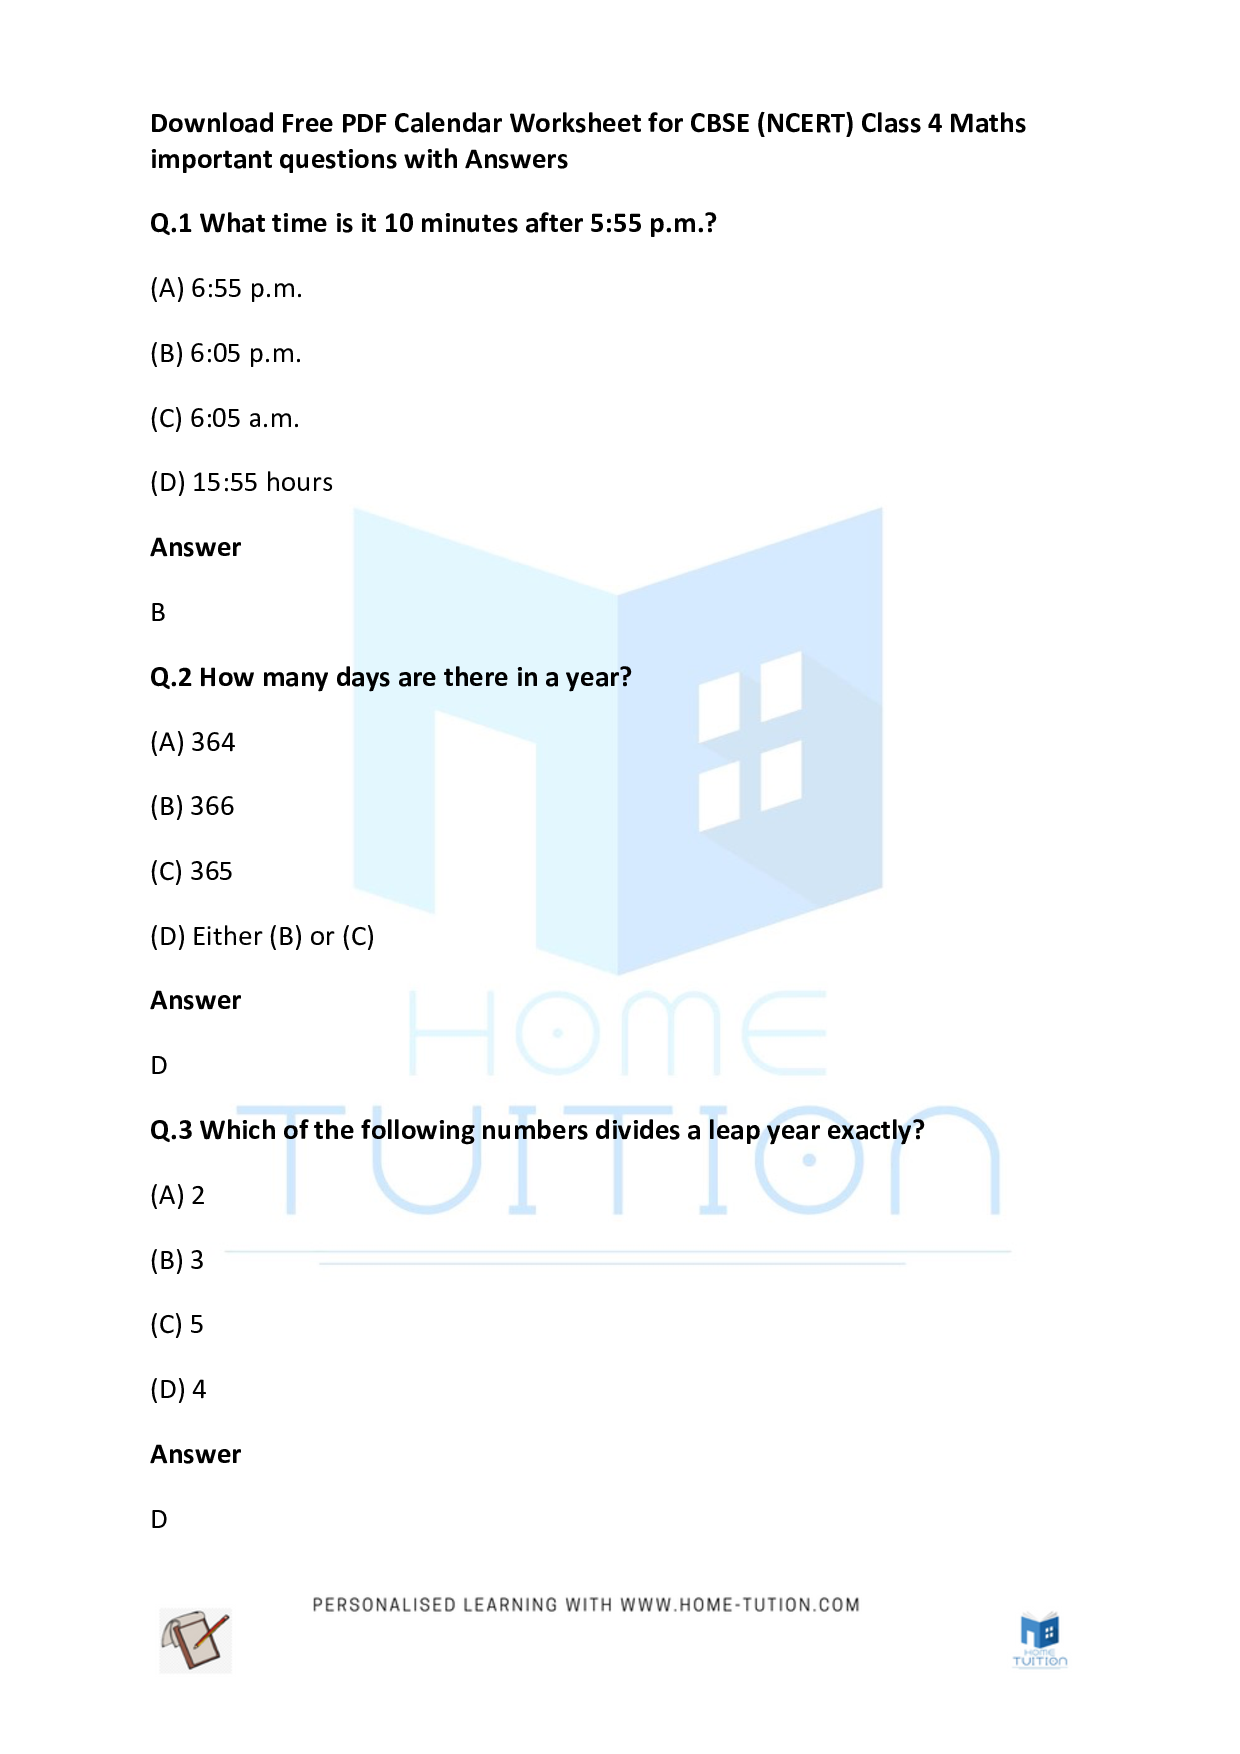 CBSE (NCERT) Class 4 Maths Calendar Worksheet Questions with Answers 